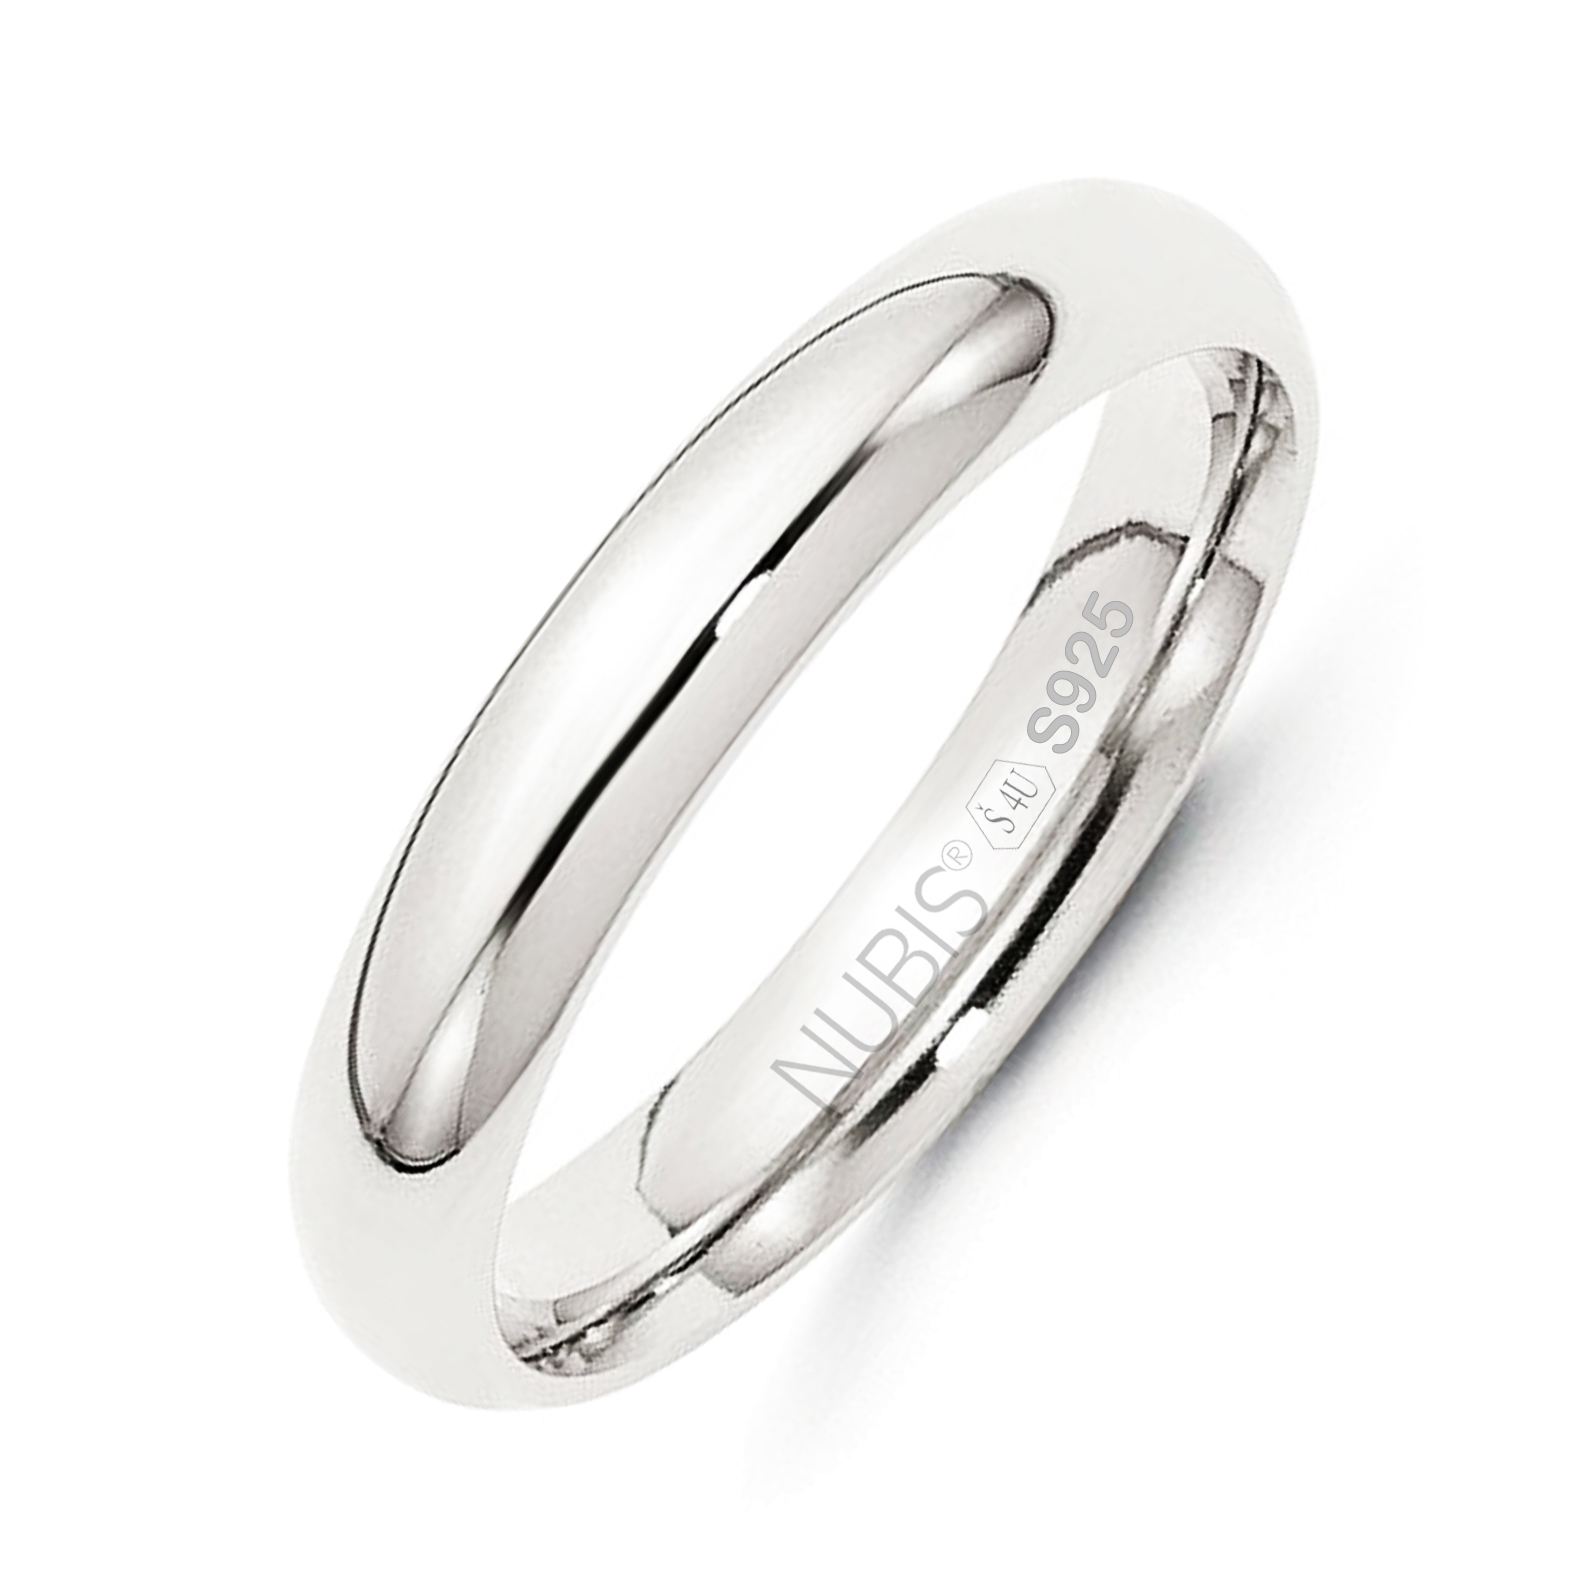 NUBIS® NB101-4 Stříbrný snubní prsten šíře 4 mm - velikost 60 - NB101-4-60